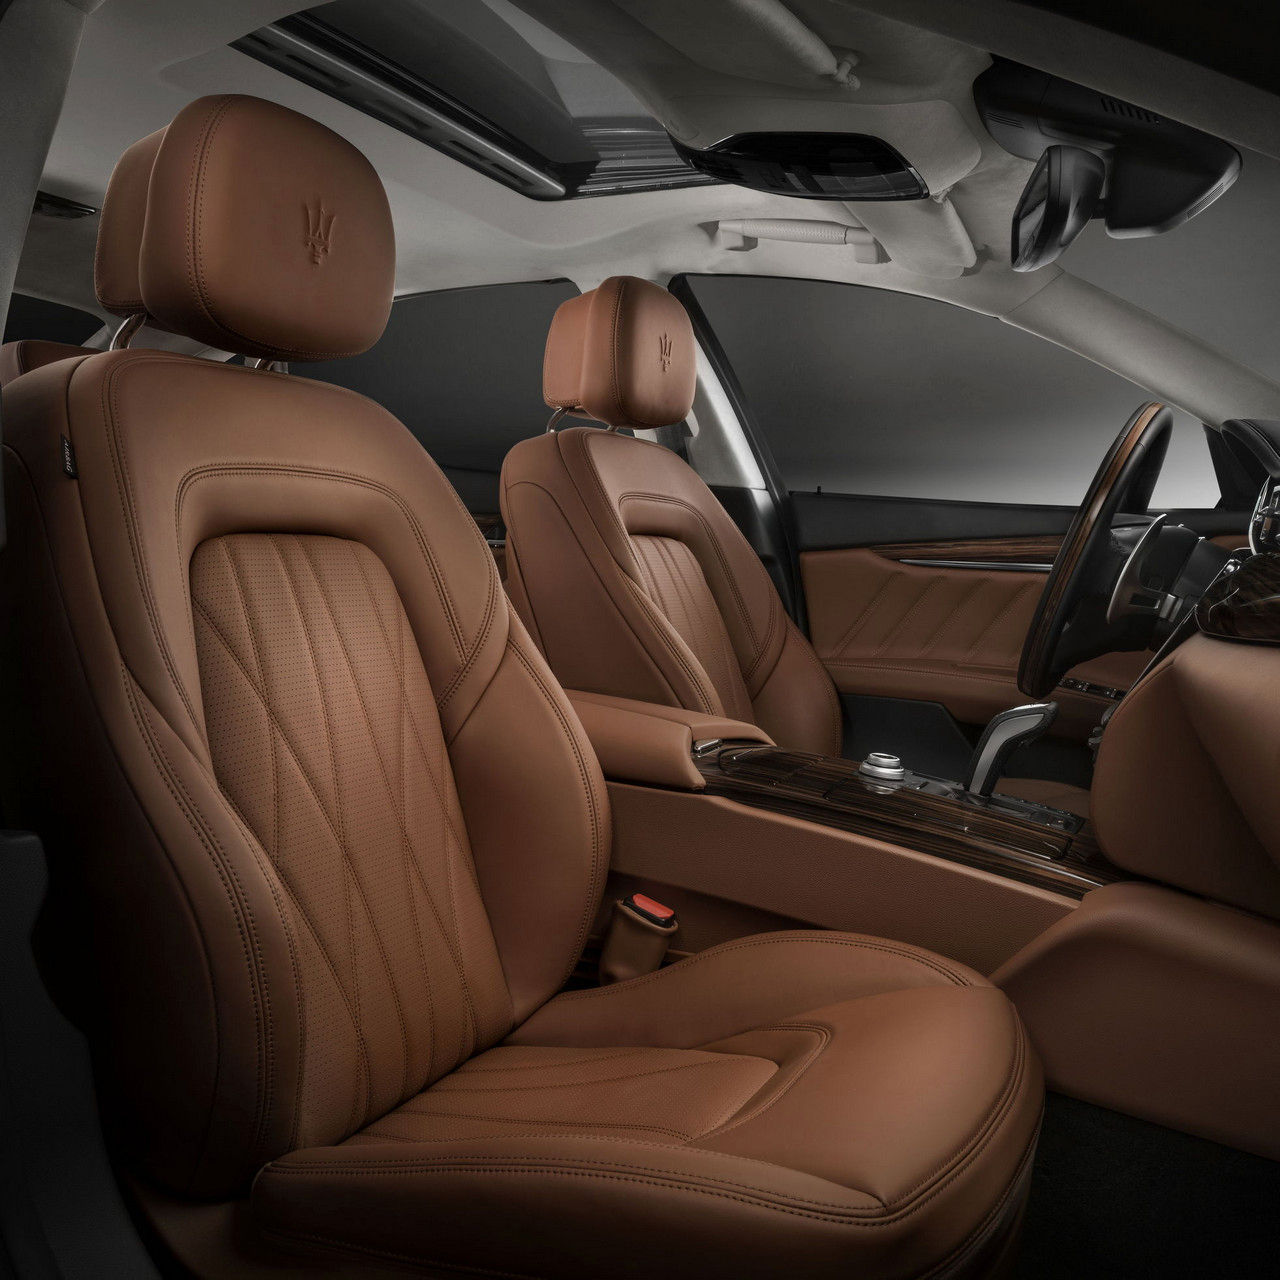 Quattroporte GranLusso Maserati - luxurious interior design